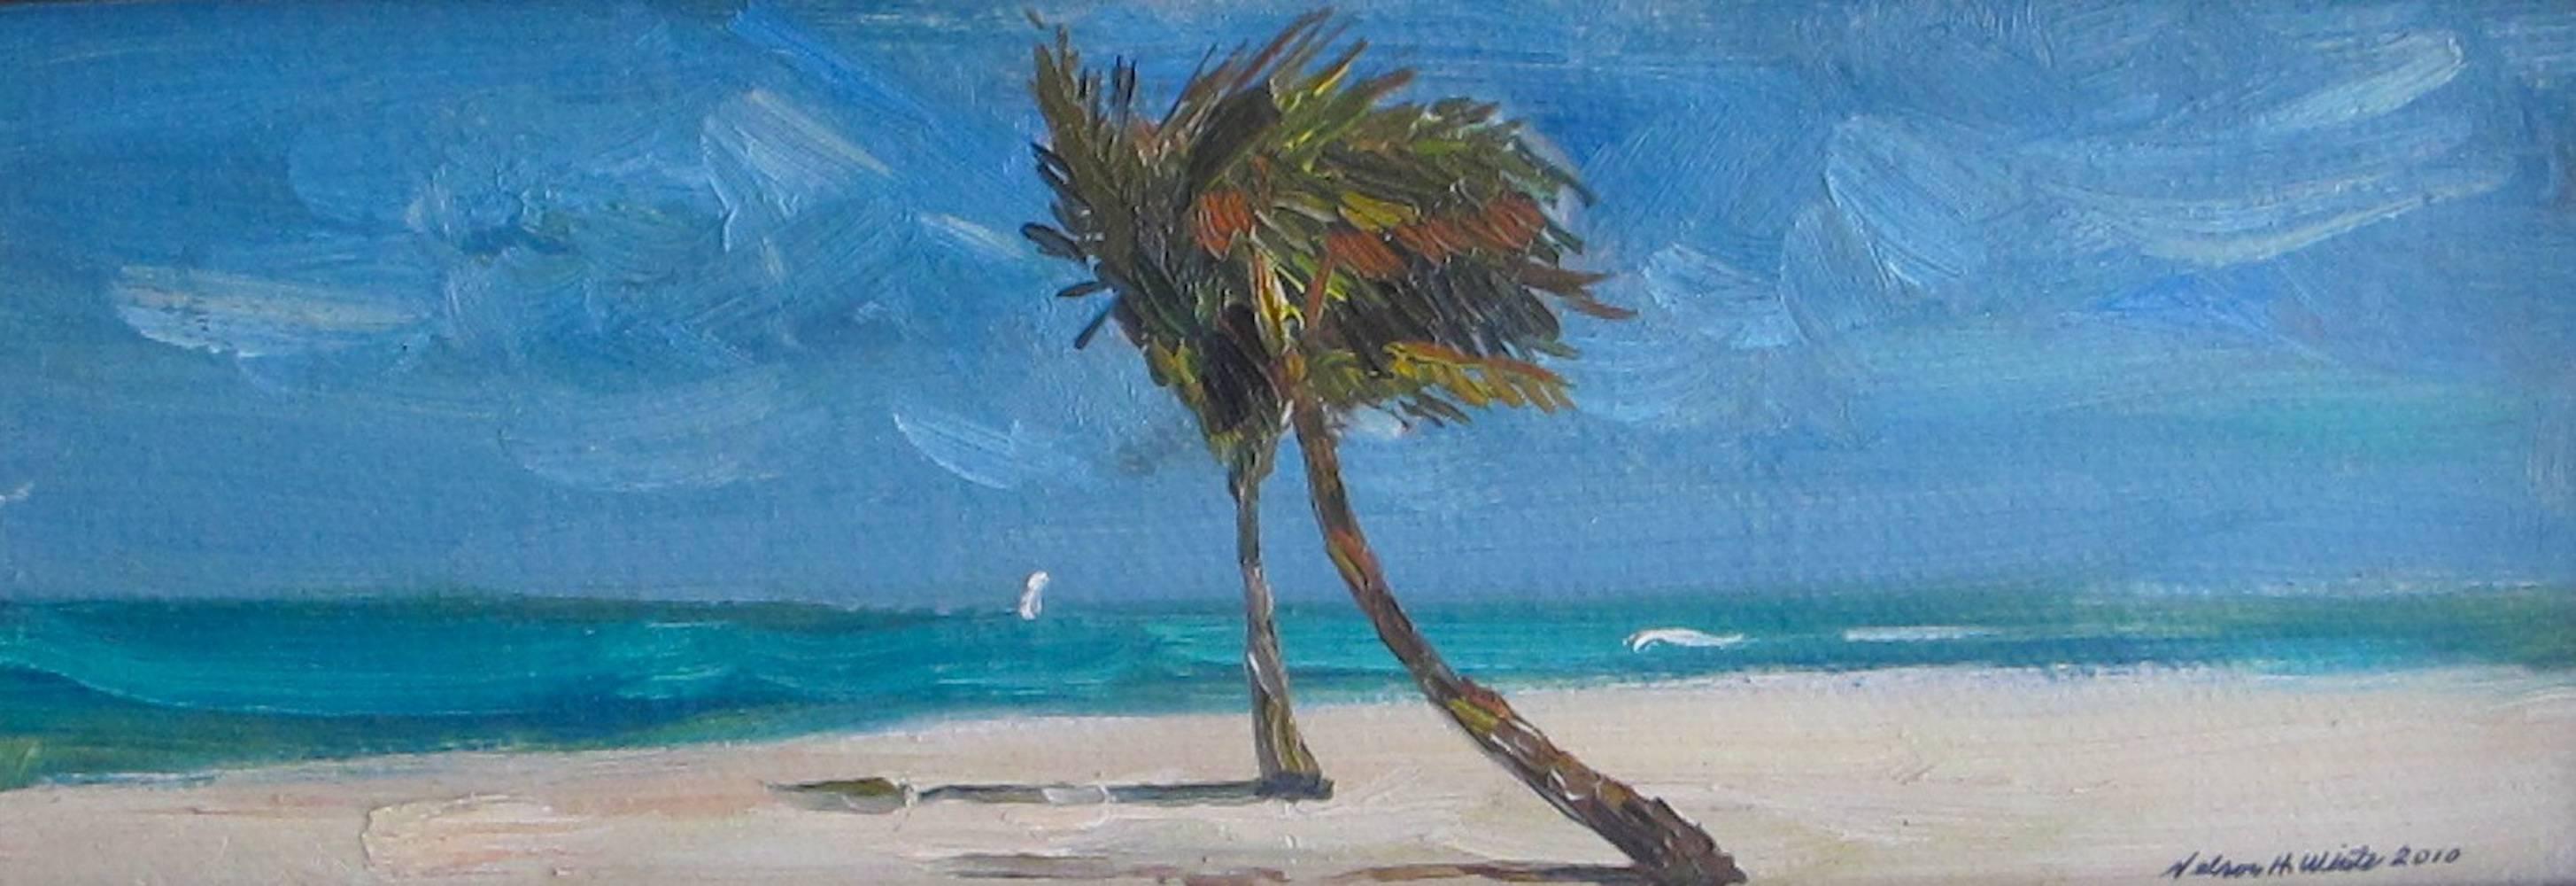 "The Royal Palms" - zeitgenössisches amerikanisches impressionistisches Gemälde, kleiner Maßstab